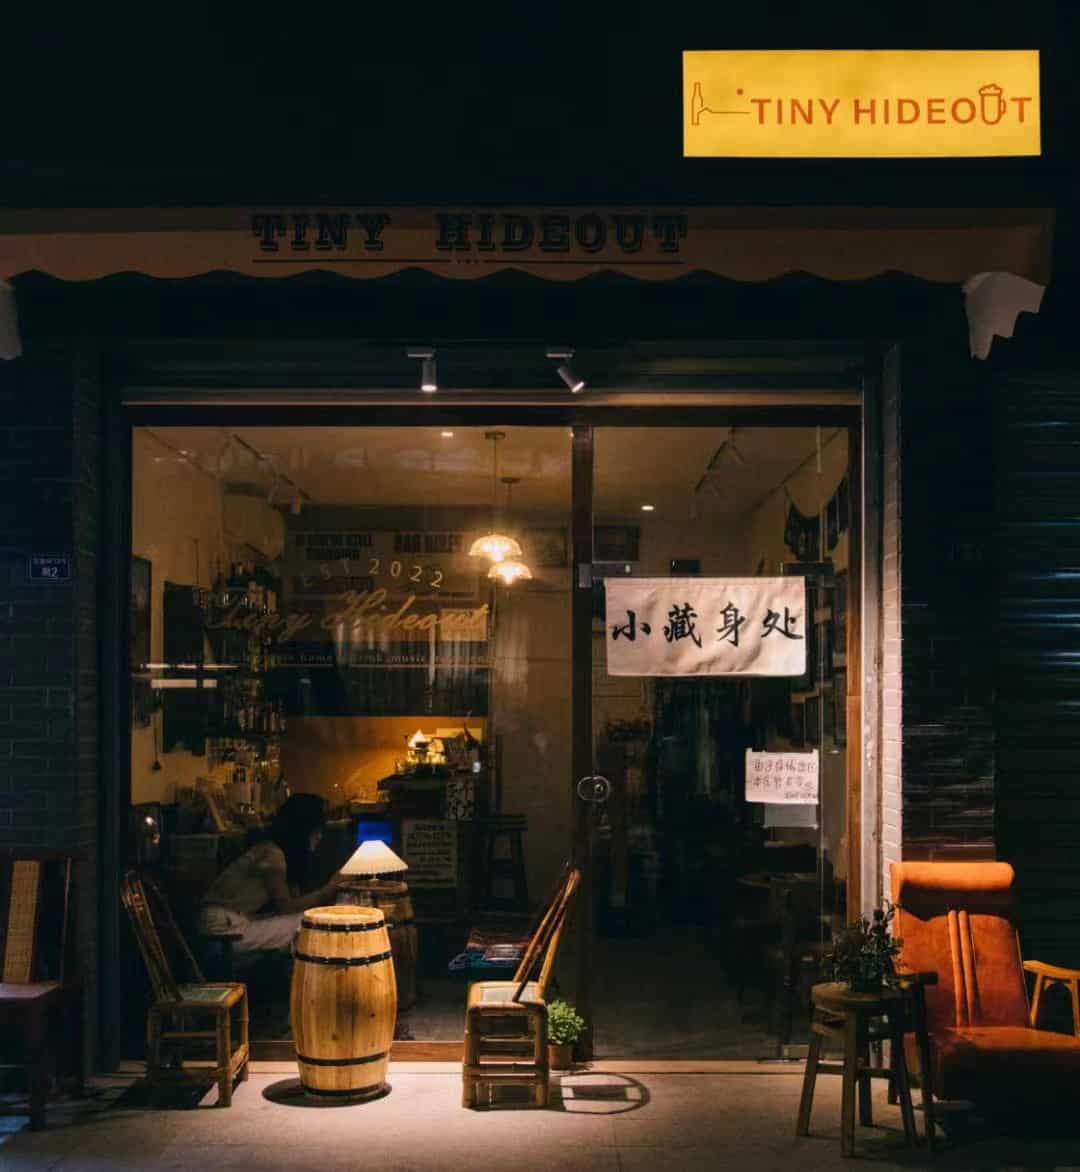 Tiny Hideout bar chengdu expat 1